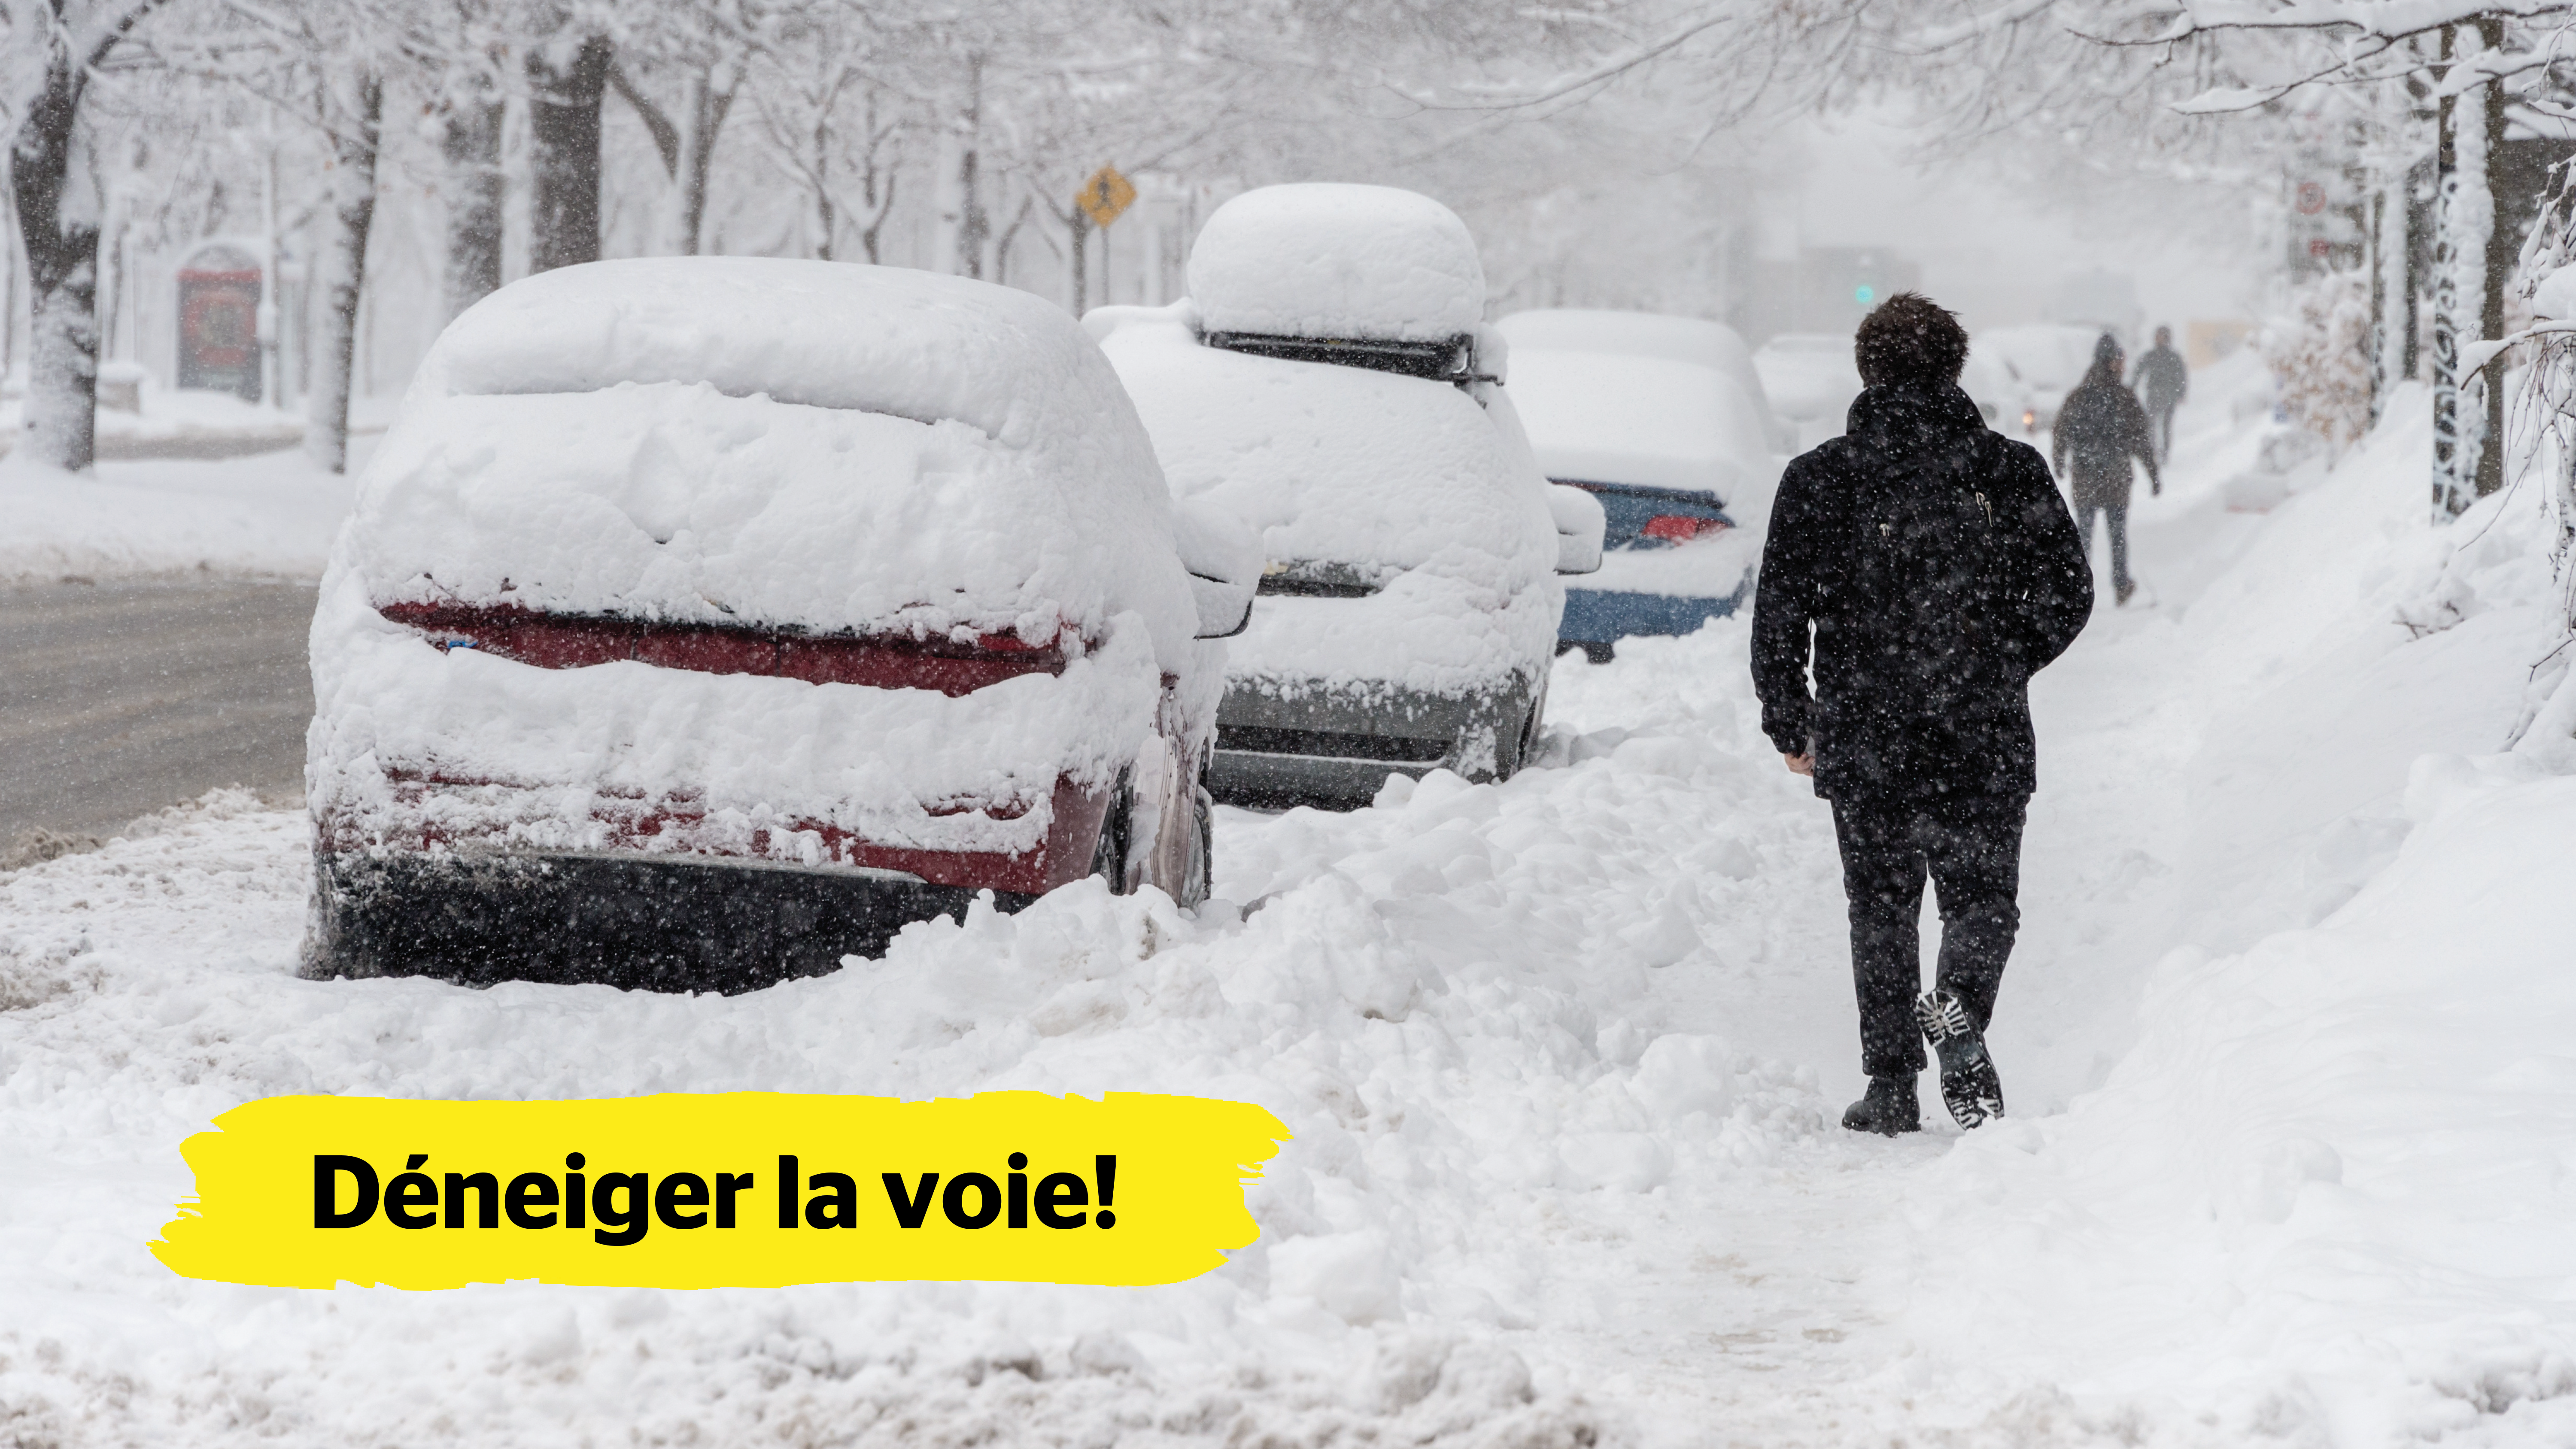 Une rue résidentielle, des trottoirs et des voitures garées sont recouverts de neige. Un homme marche sur un trottoir enneigé.  Dans le coin inférieur gauche de l’image, une bannière jaune affichant le texte « Déneiger la voie! » est superposée.